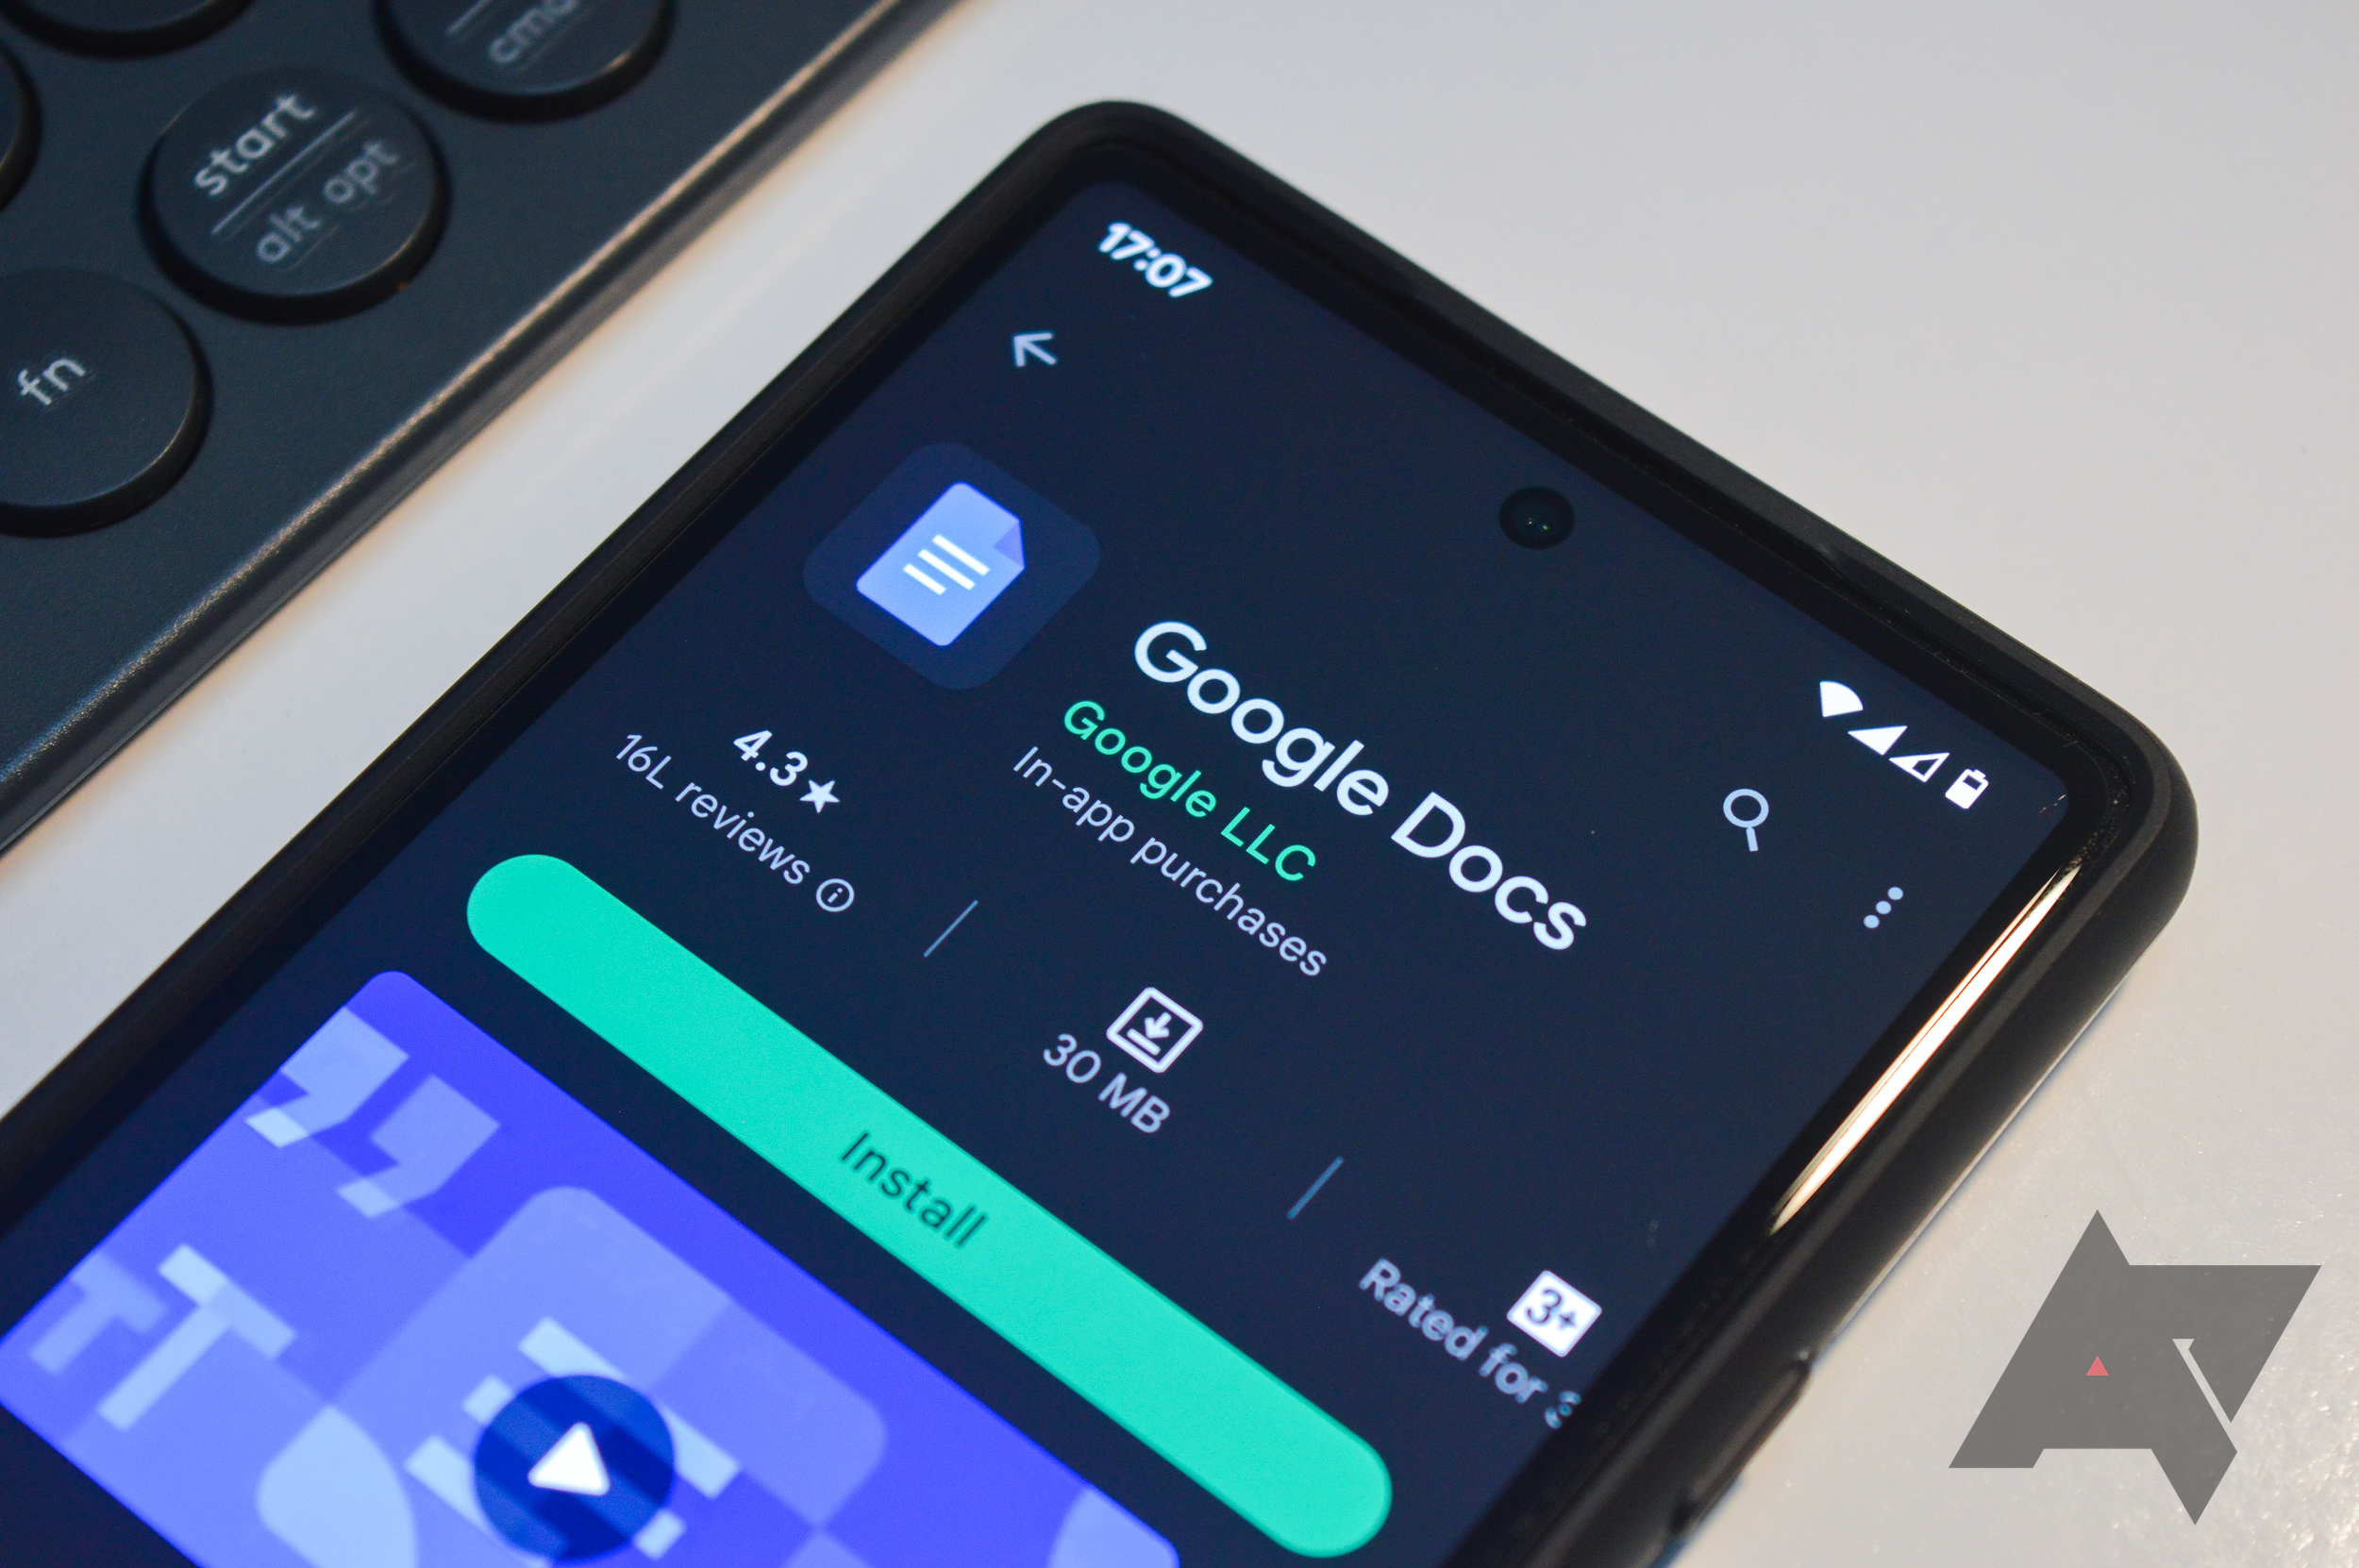 Tela do telefone mostrando o aplicativo Google Docs na Google Play Store